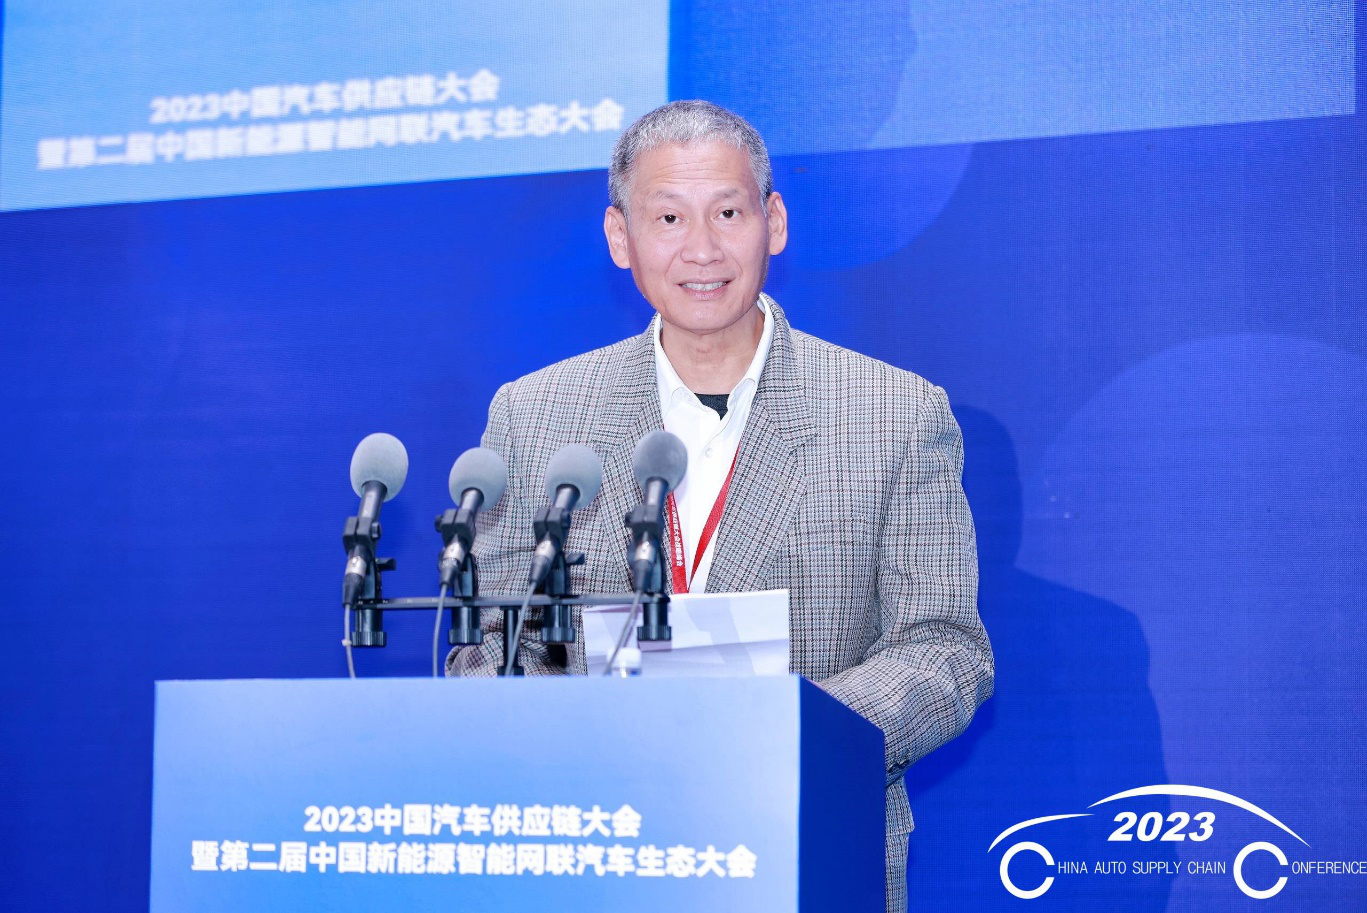 中汽协会姚杰：新材料技术不断进步，极大促进汽车产业发展